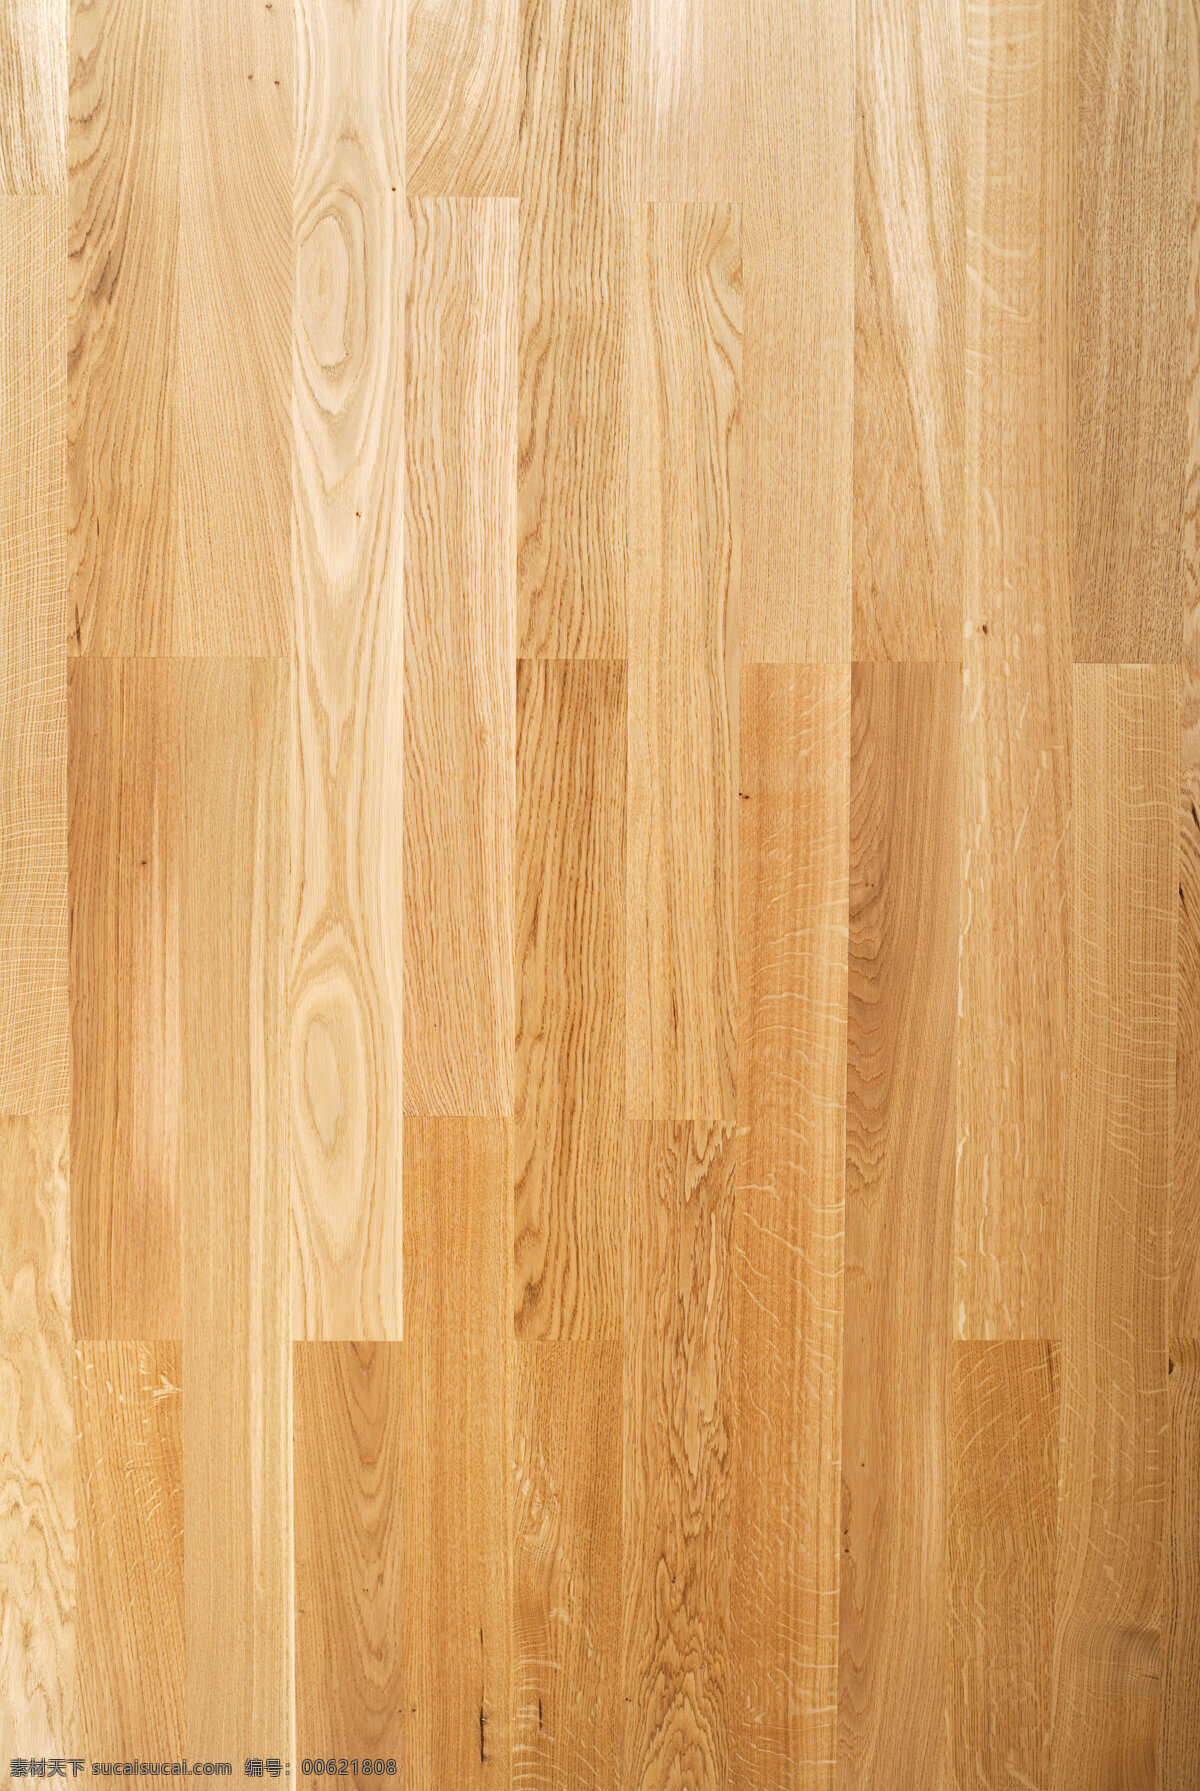 木板 木 墙 板 背景 硬木 木材 地板 棕色 纹理 粗糙 背景板